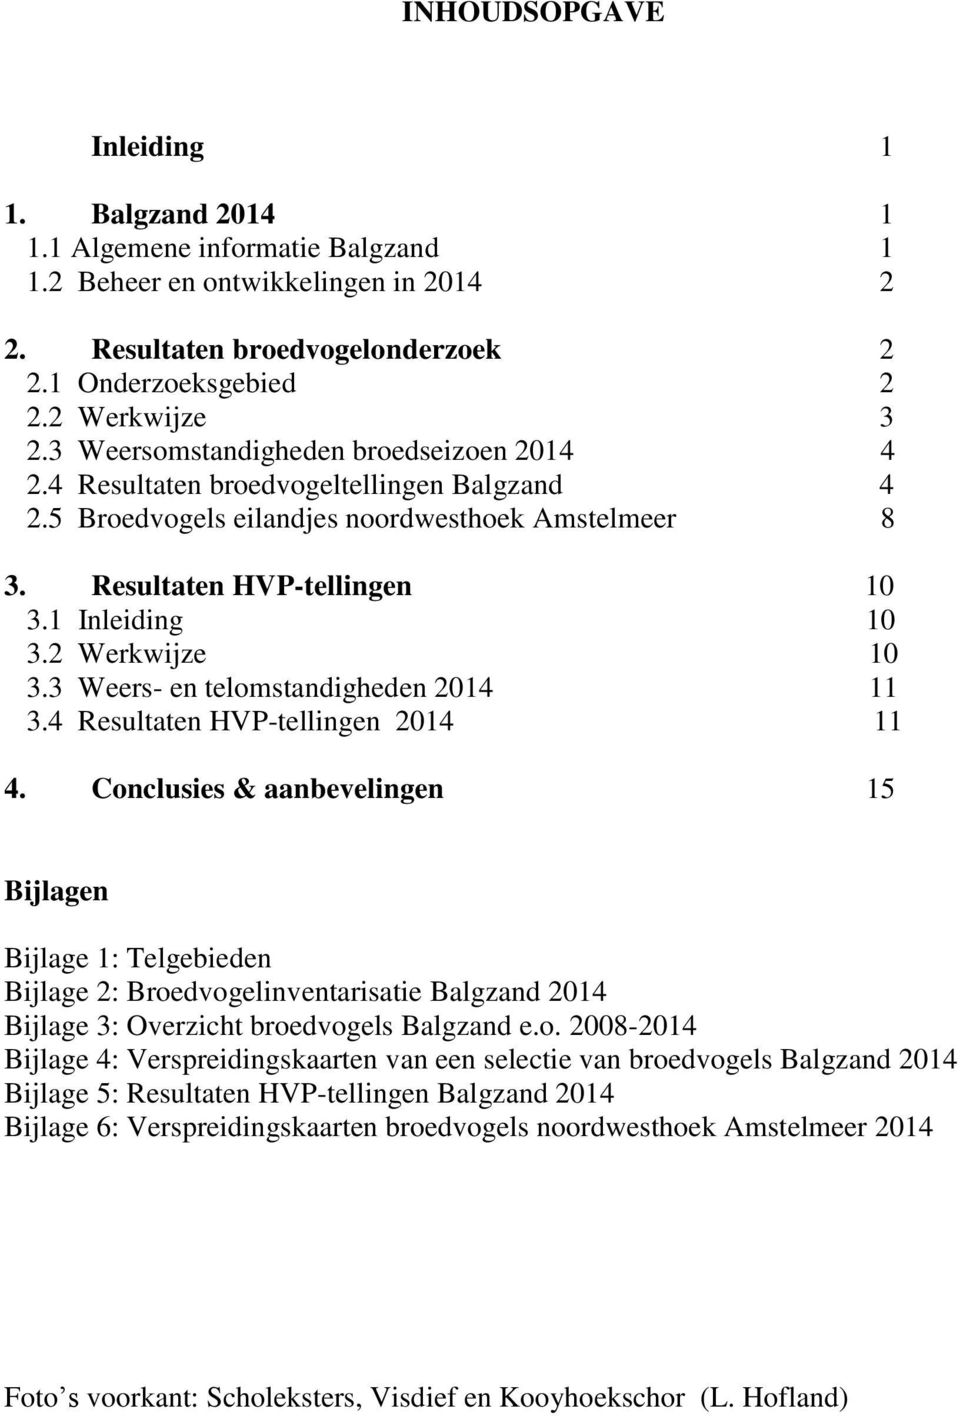 2 Werkwijze 10 3.3 Weers- en telomstandigheden 2014 11 3.4 Resultaten HVP-tellingen 2014 11 4.